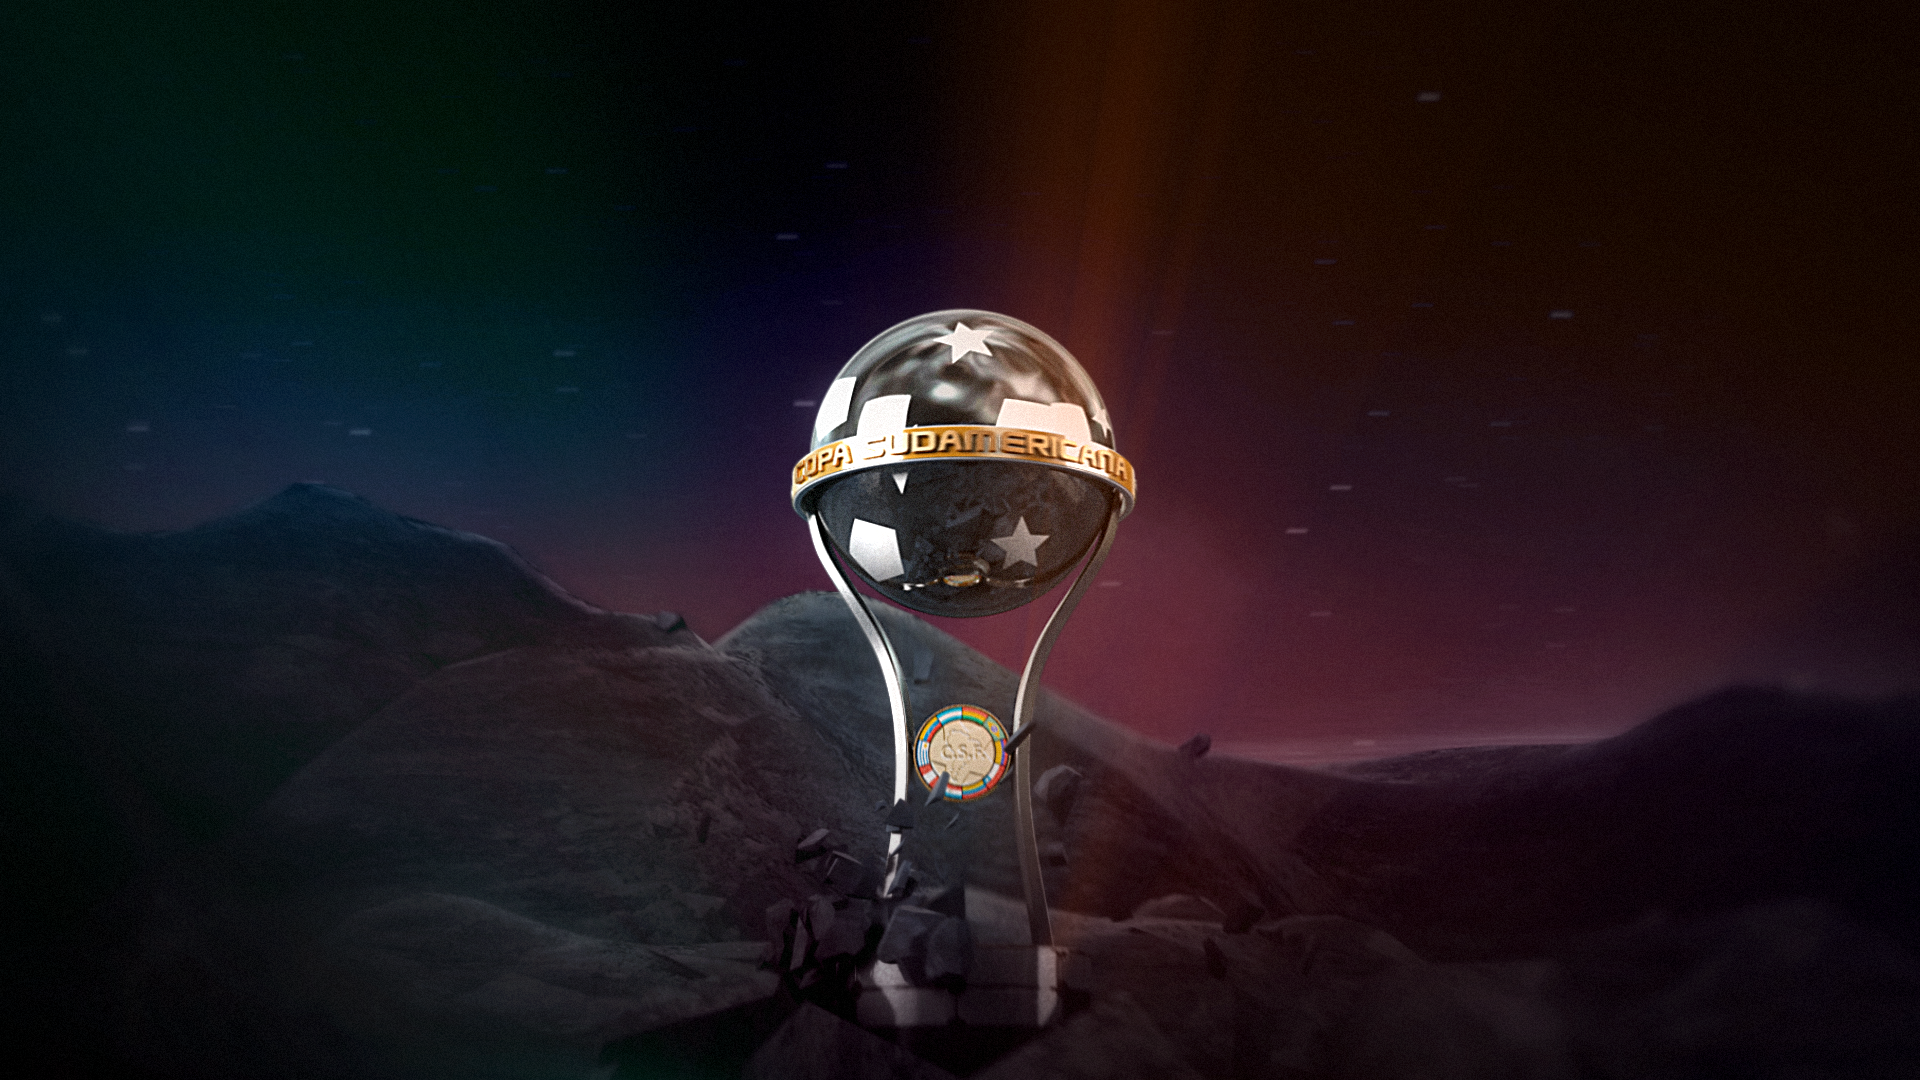 Icon for First Win: Copa Sudamericana